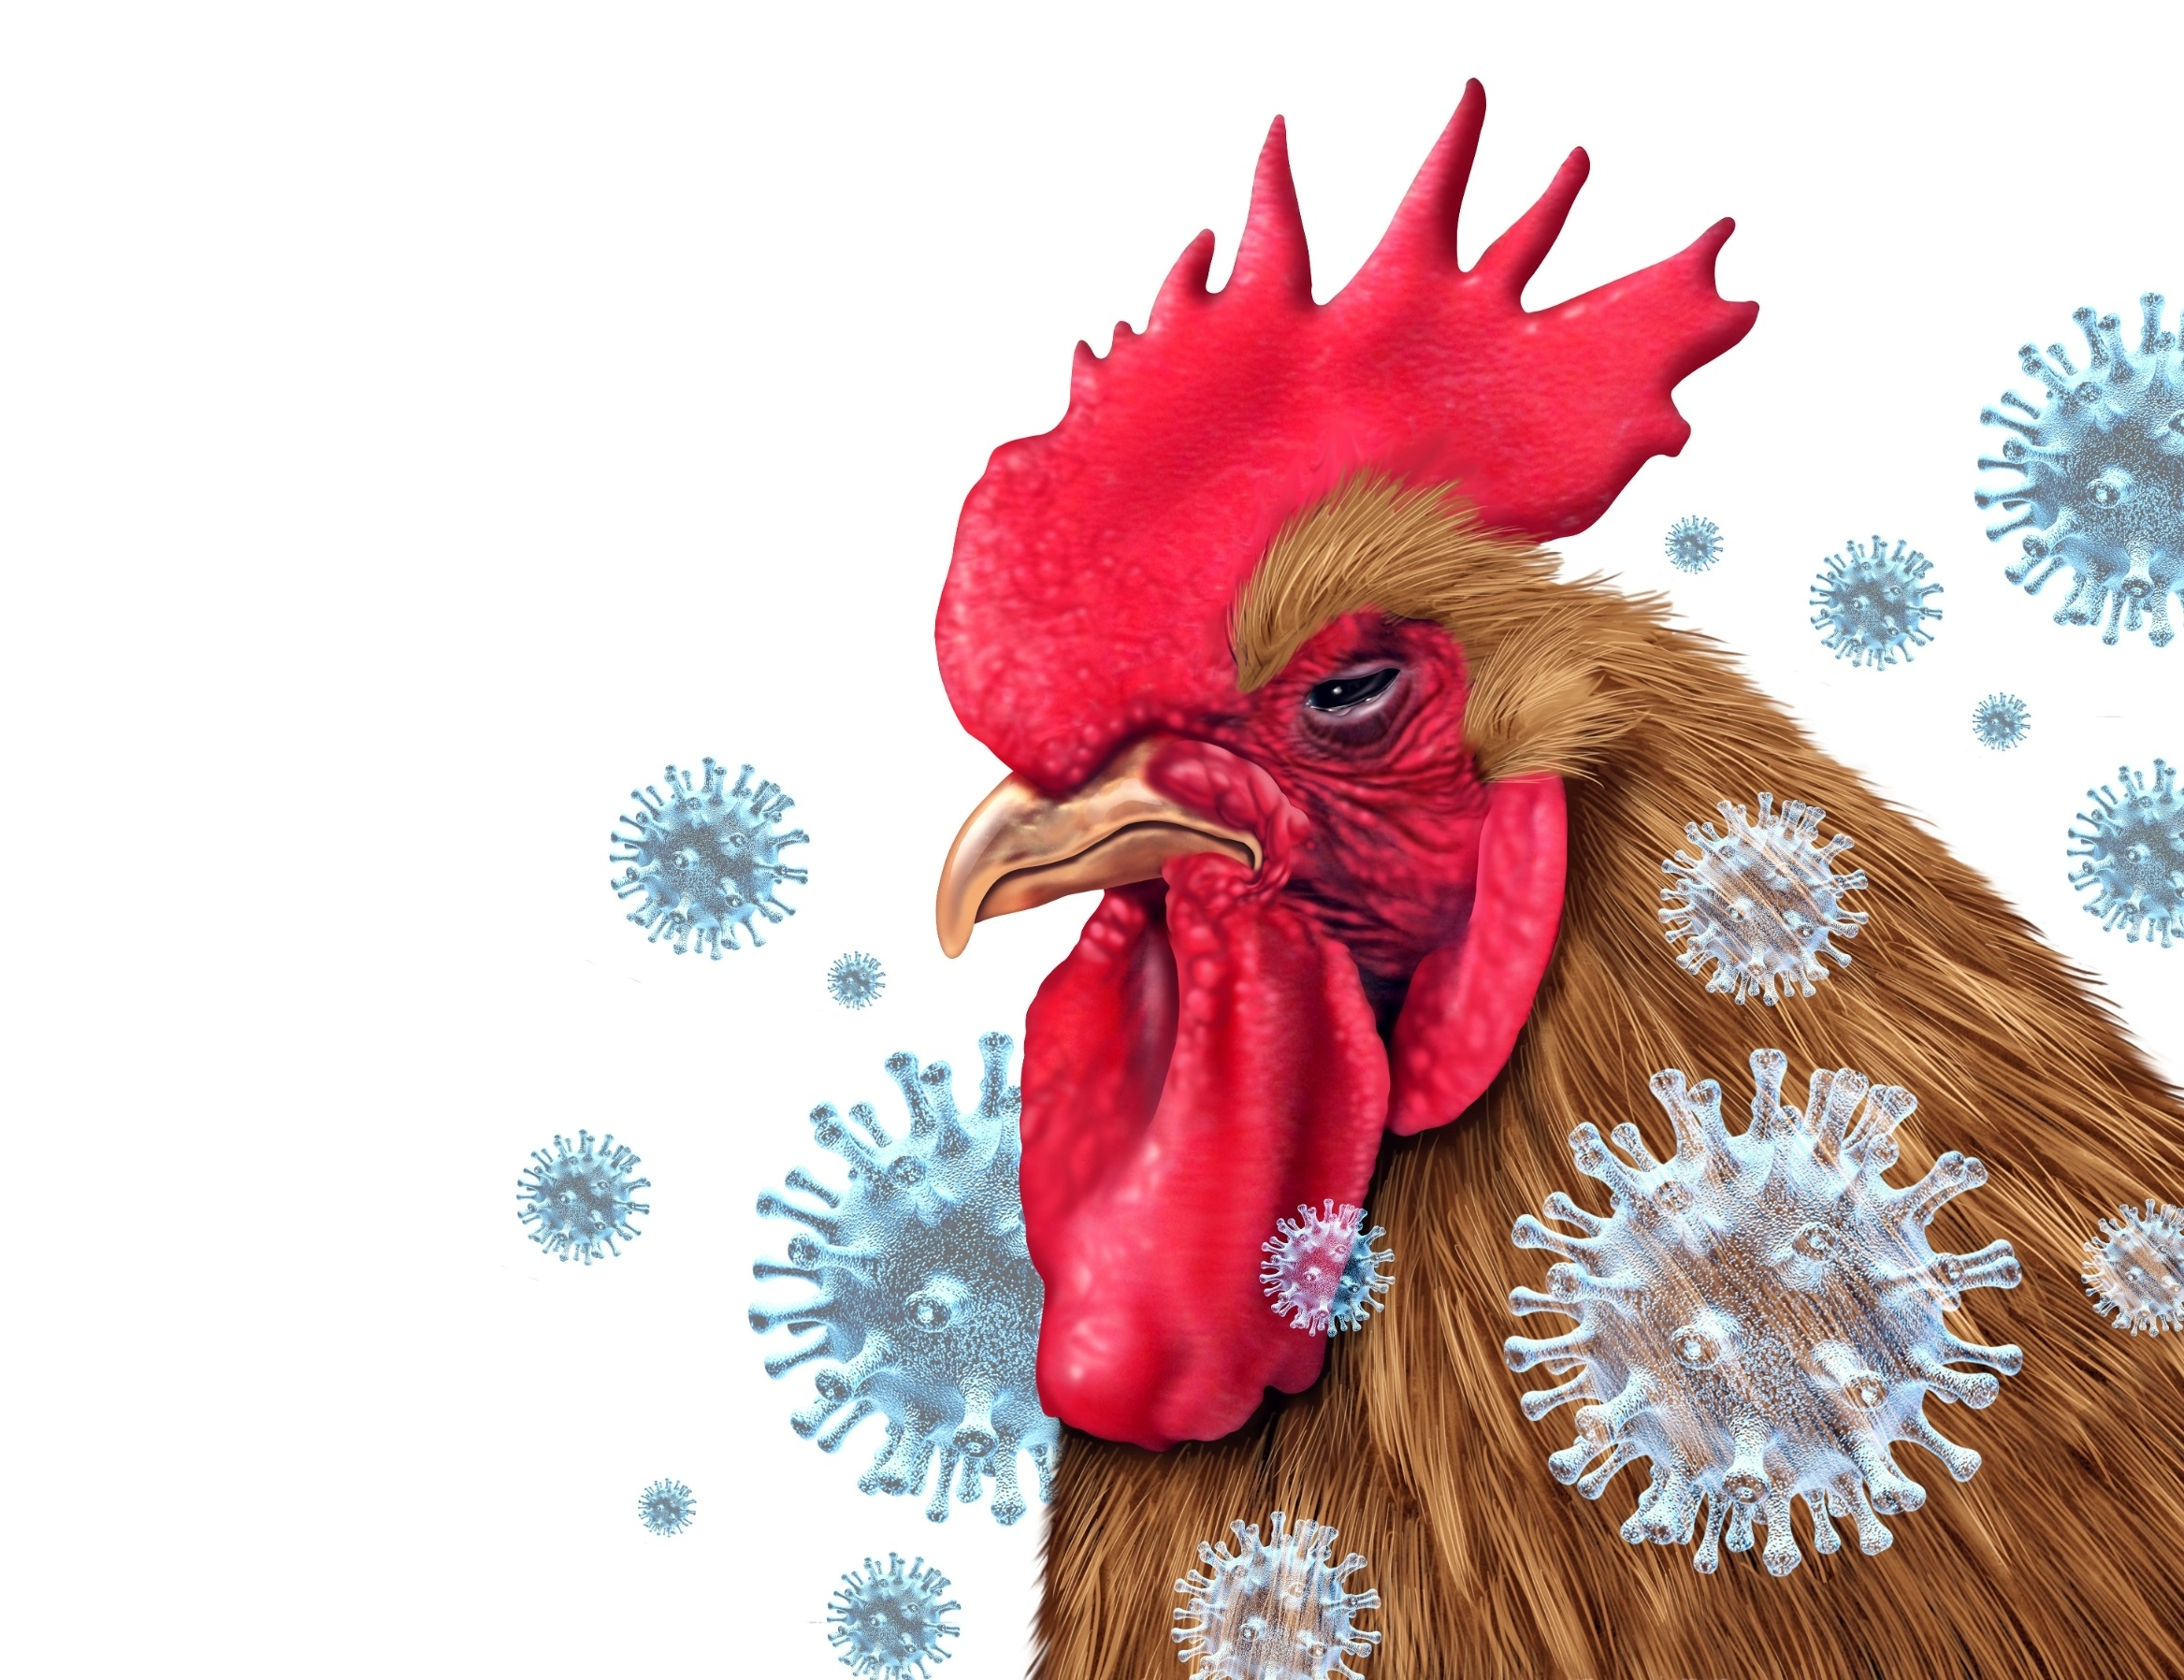 Po dvejų metų pertraukos Lietuvoje – vėl paukščių gripo židinys